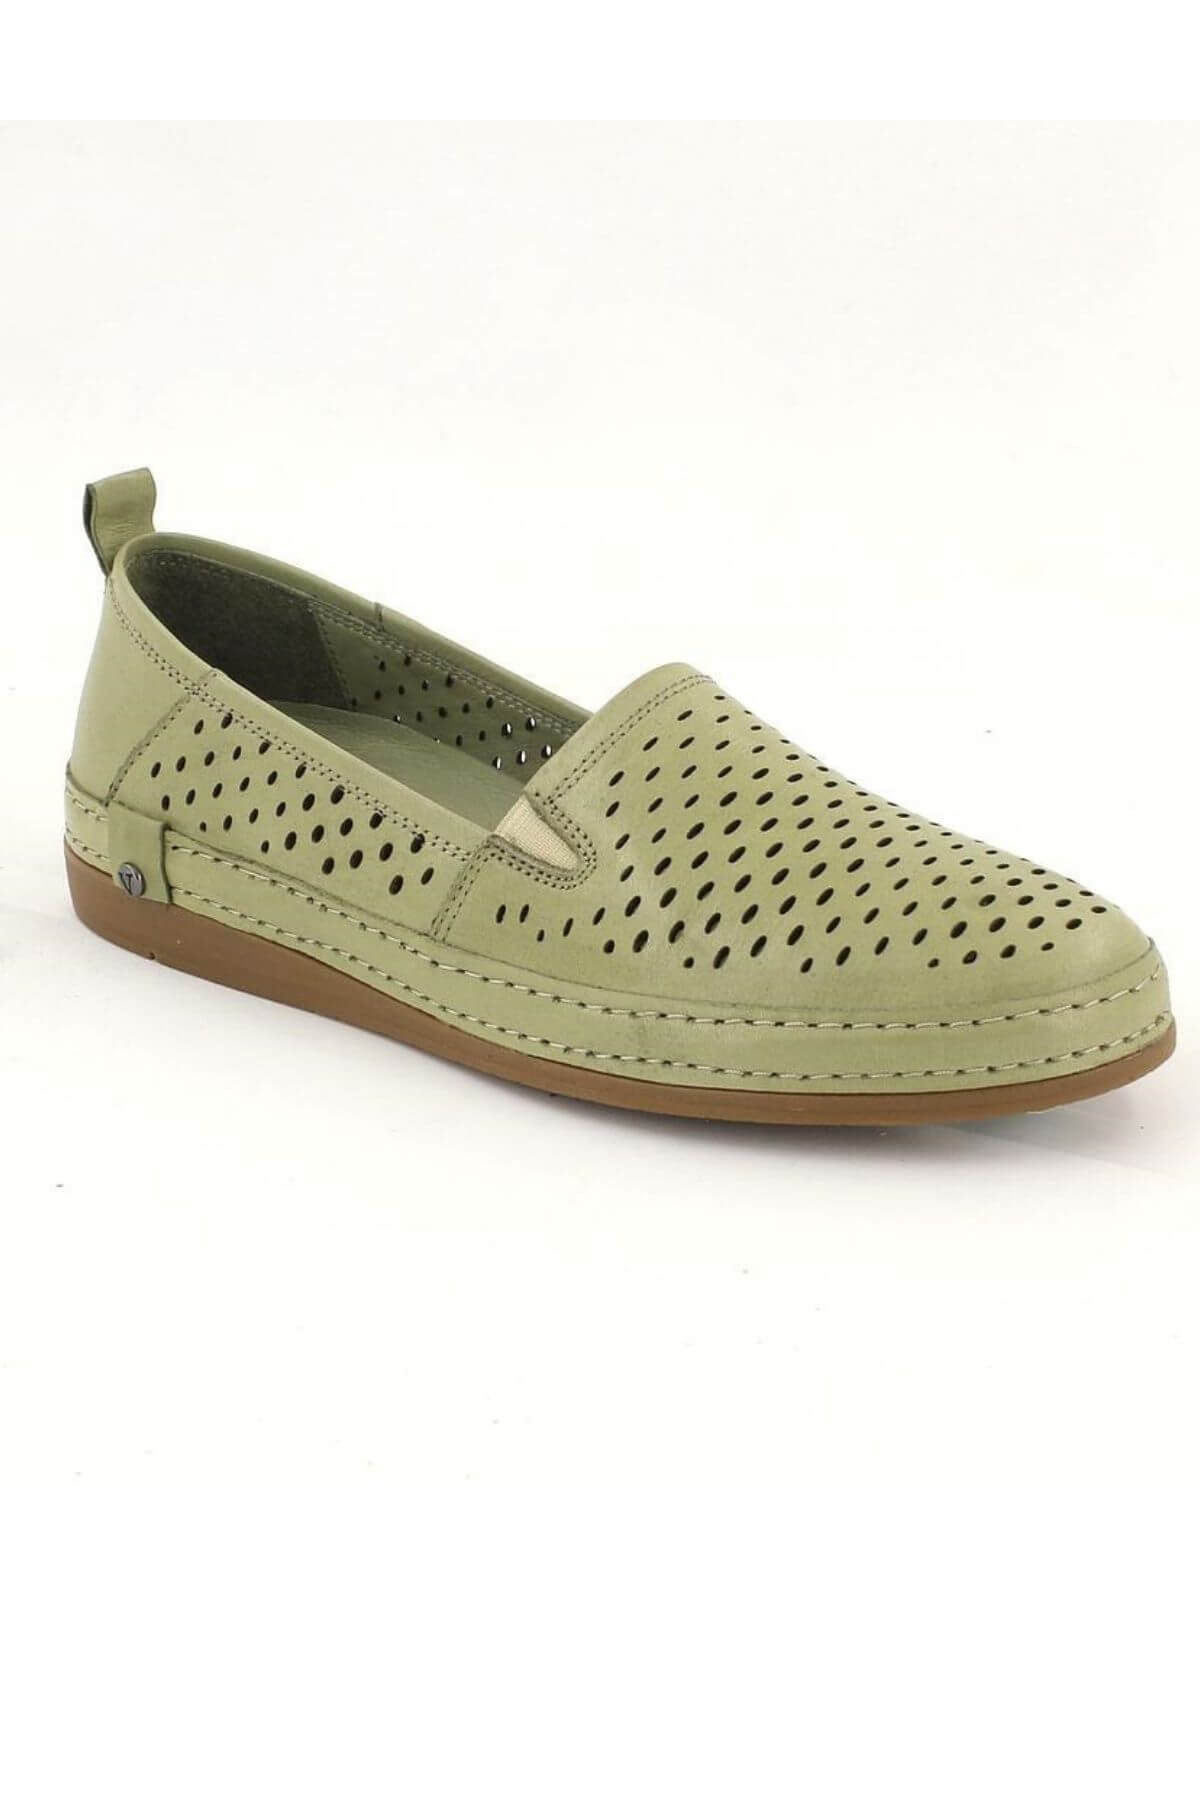 Kadın Yazlık Comfort Deri Ayakkabı Yeşil 2211201Y - Thumbnail